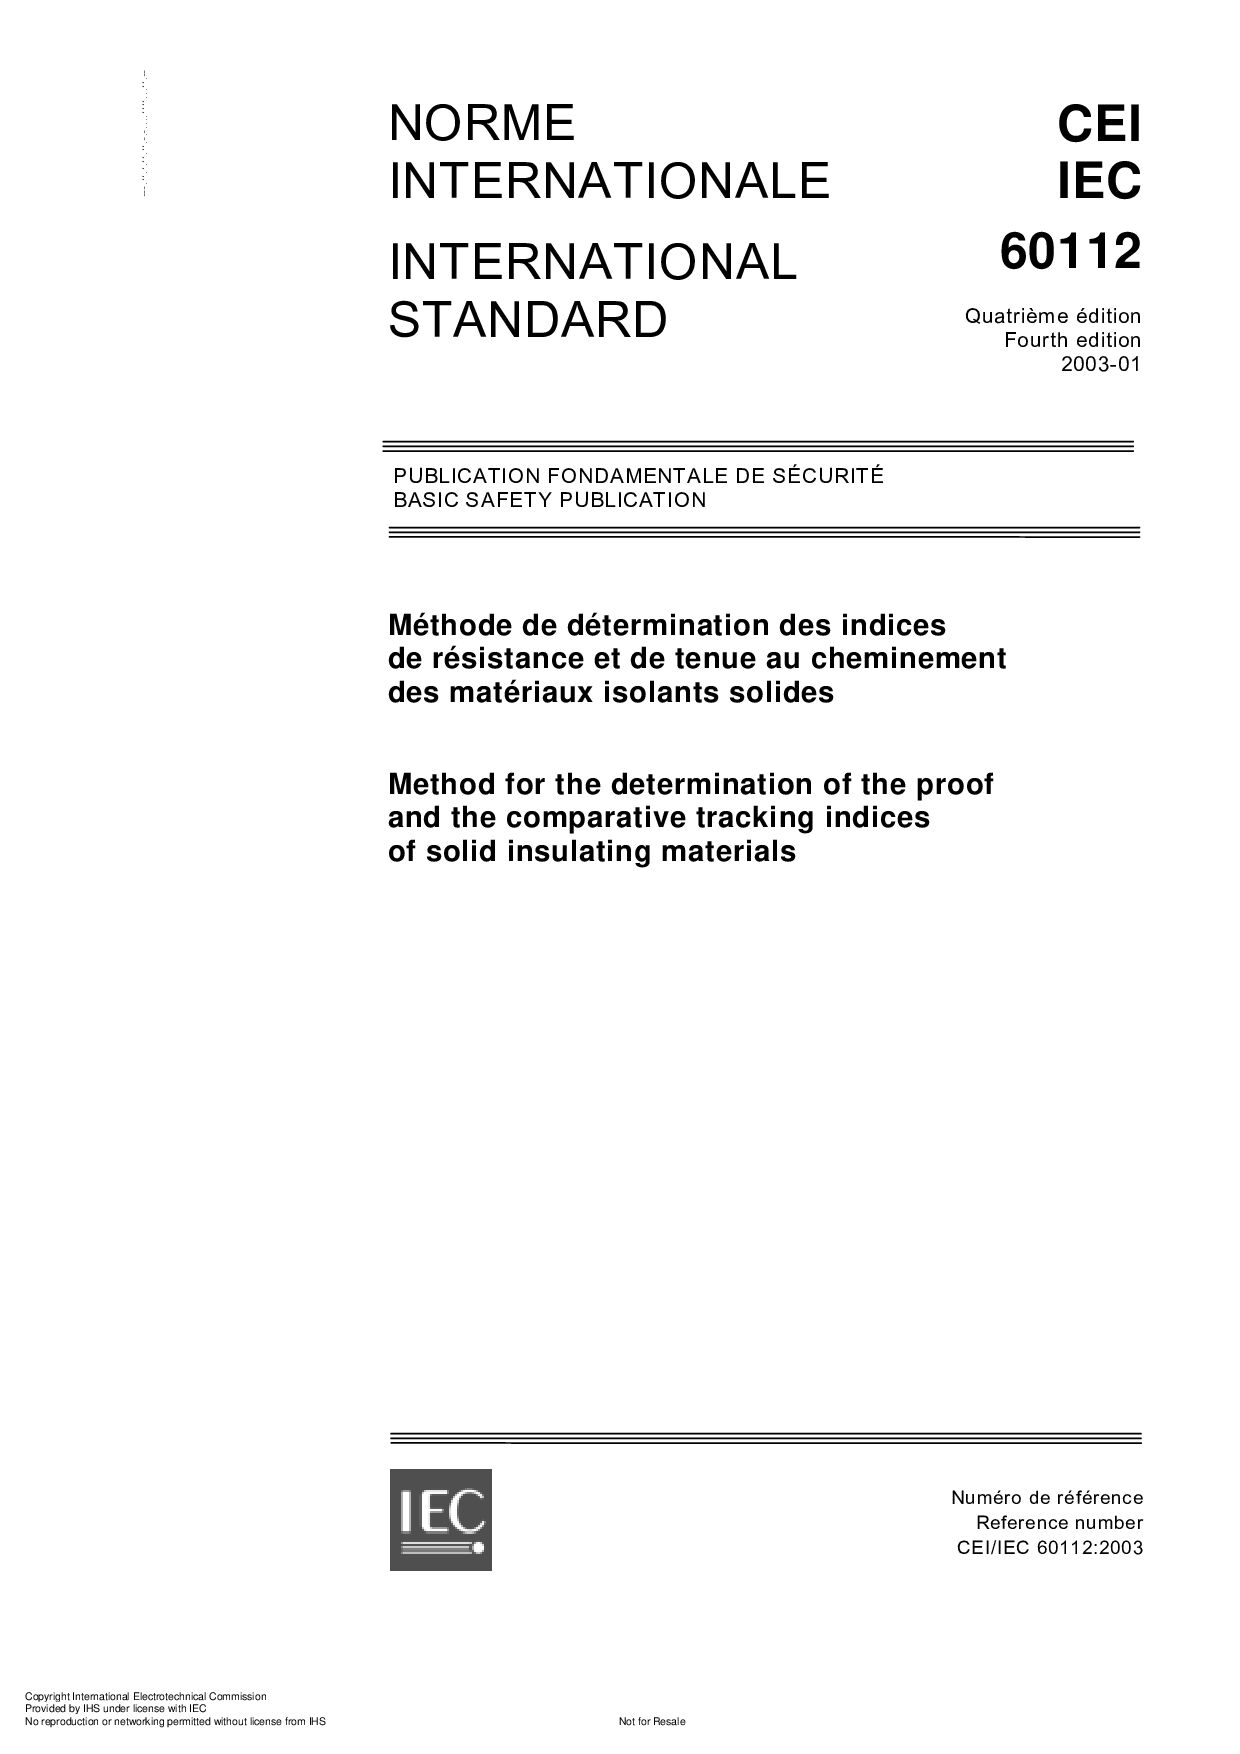 IEC 60112:2003